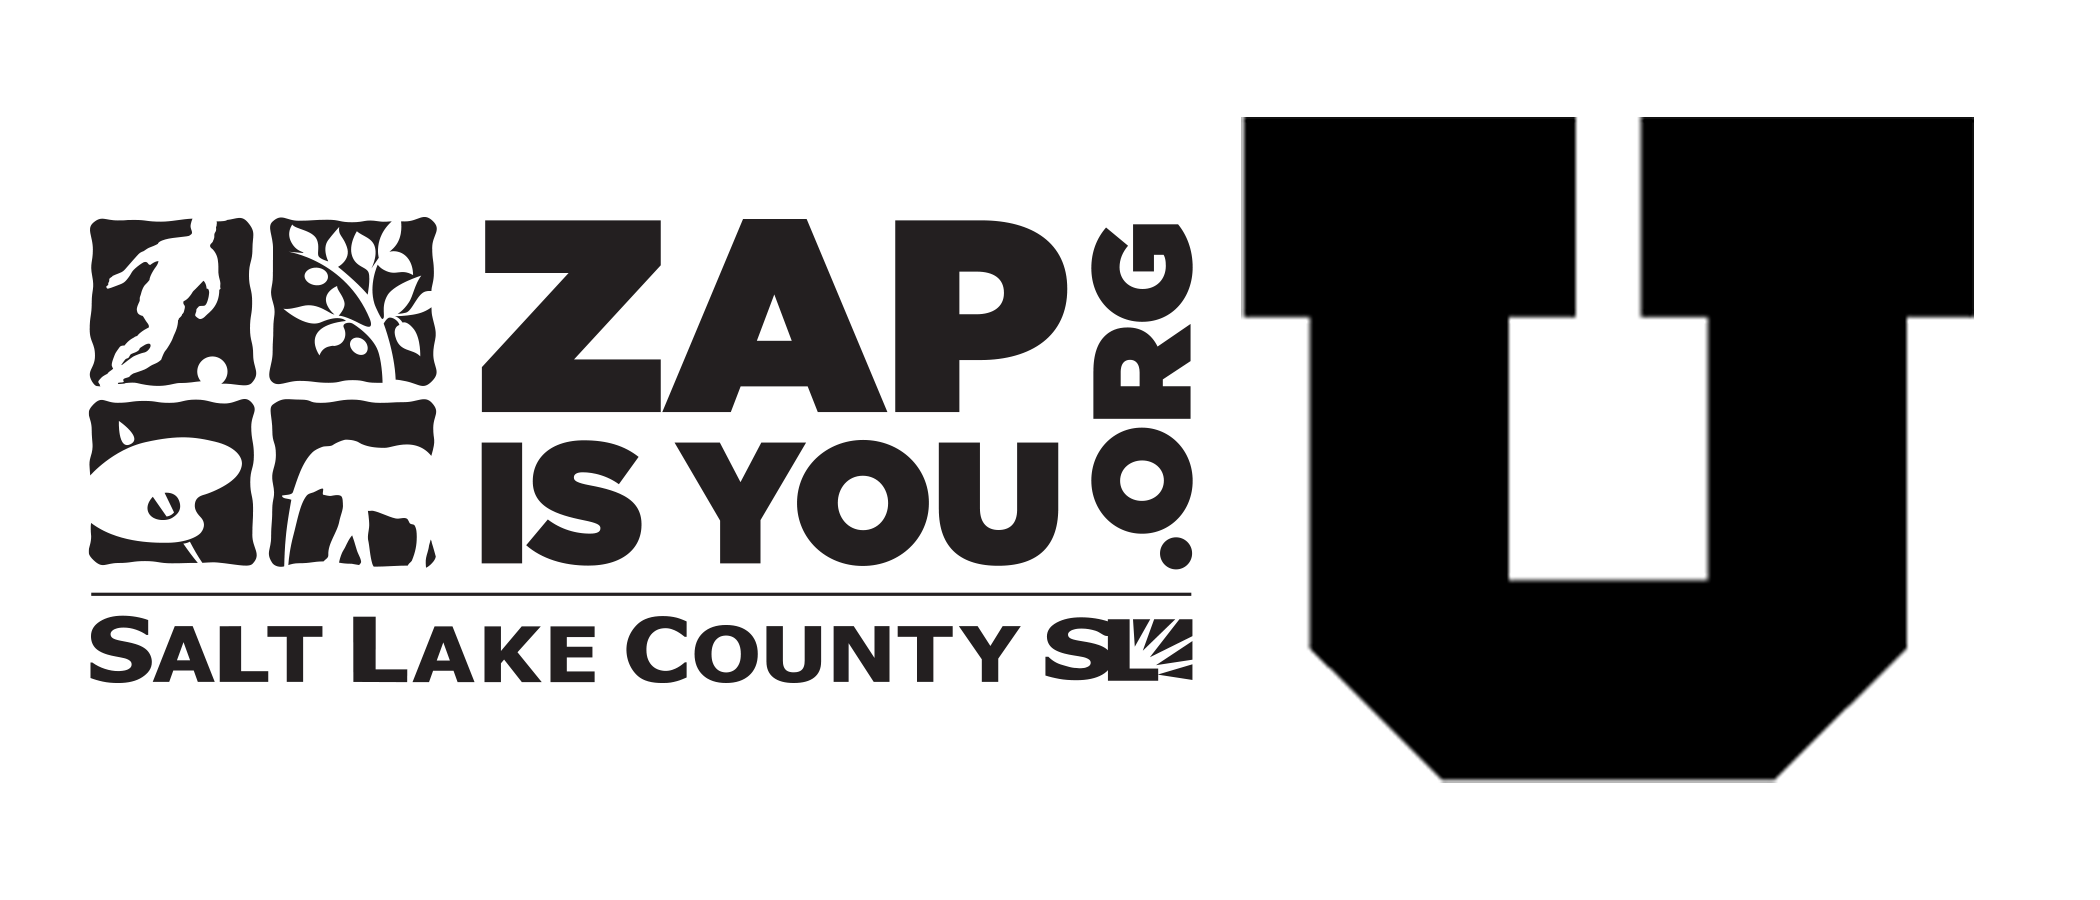 ZAP and University of Utah Logos